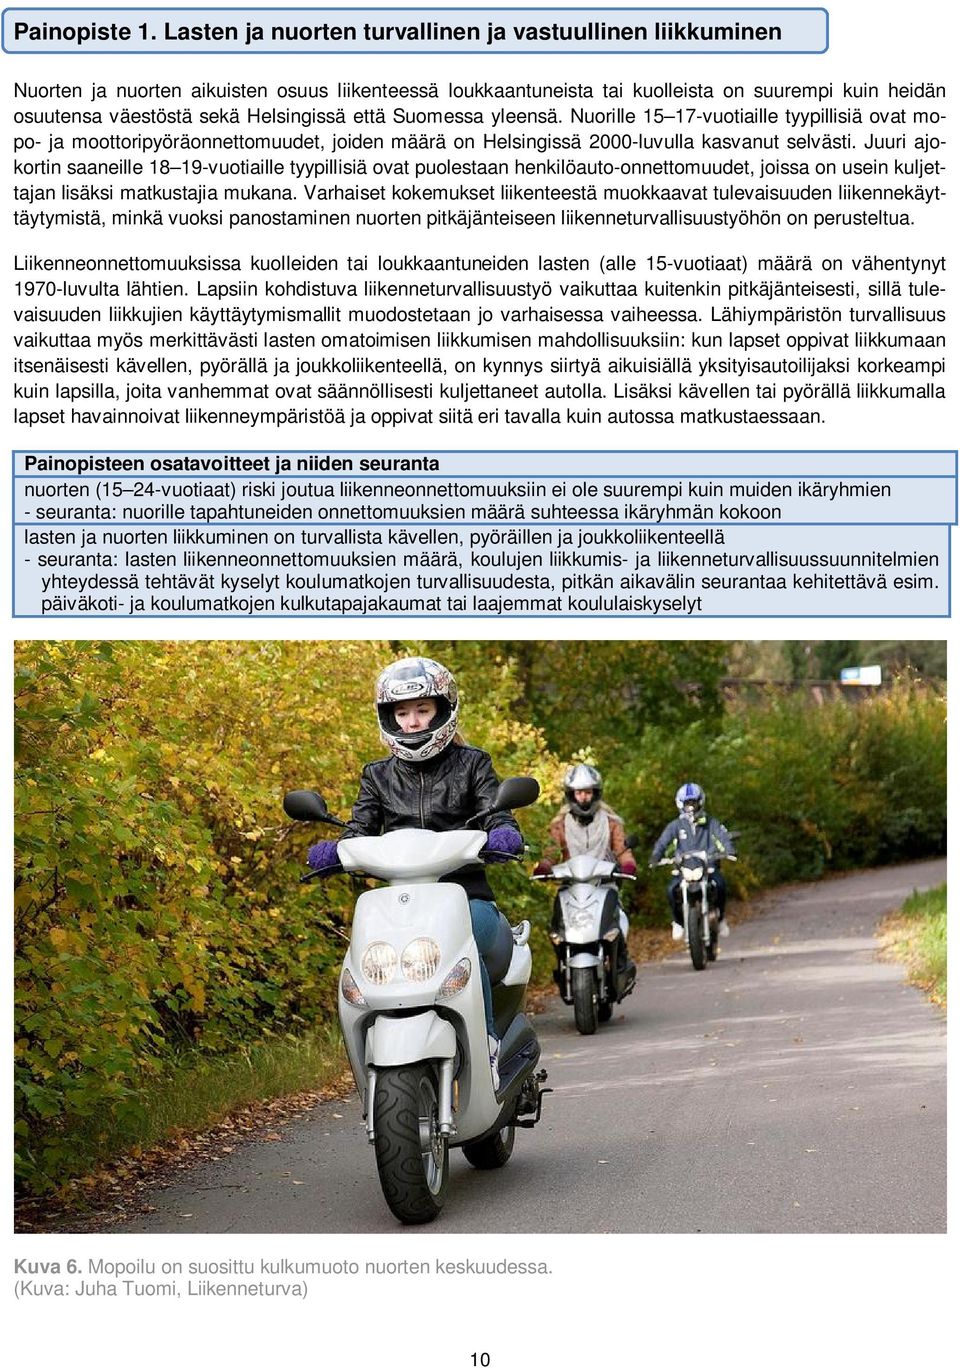 että Suomessa yleensä. Nuorille 15 17-vuotiaille tyypillisiä ovat mopo- ja moottoripyöräonnettomuudet, joiden määrä on Helsingissä 2000-luvulla kasvanut selvästi.